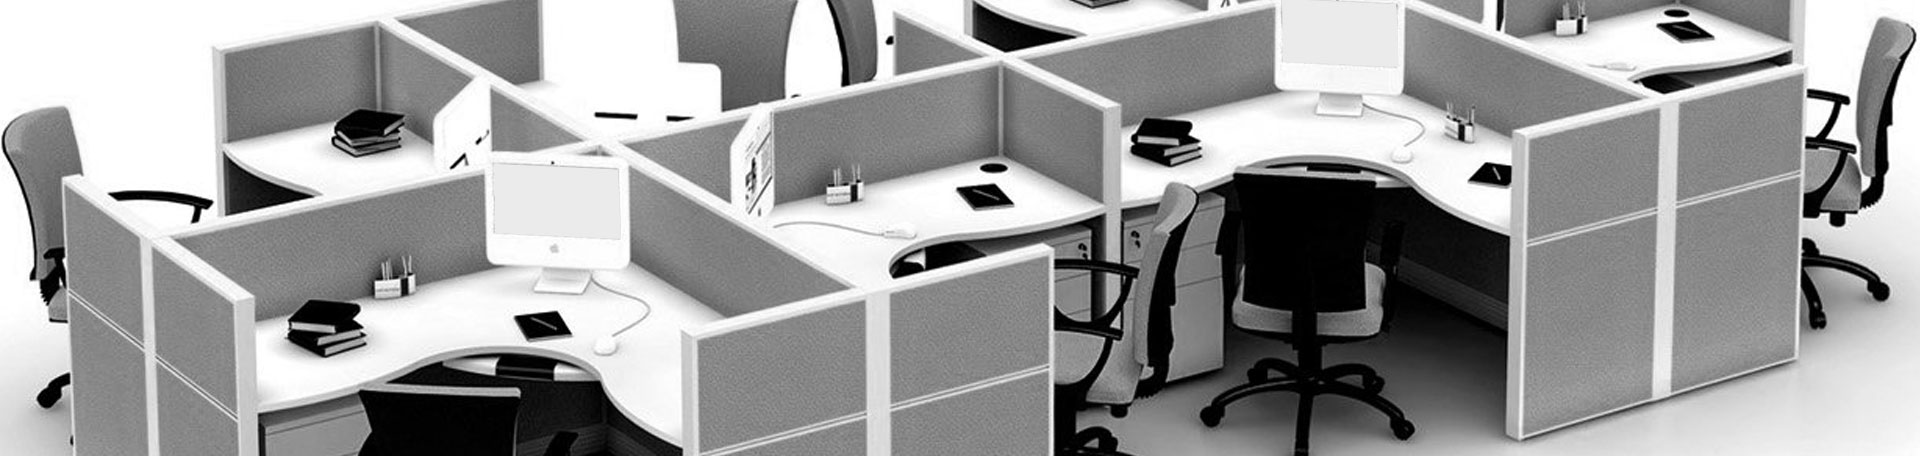 Workstation & Desking - Modular Office Workstation Manufacturer from Gurgaon